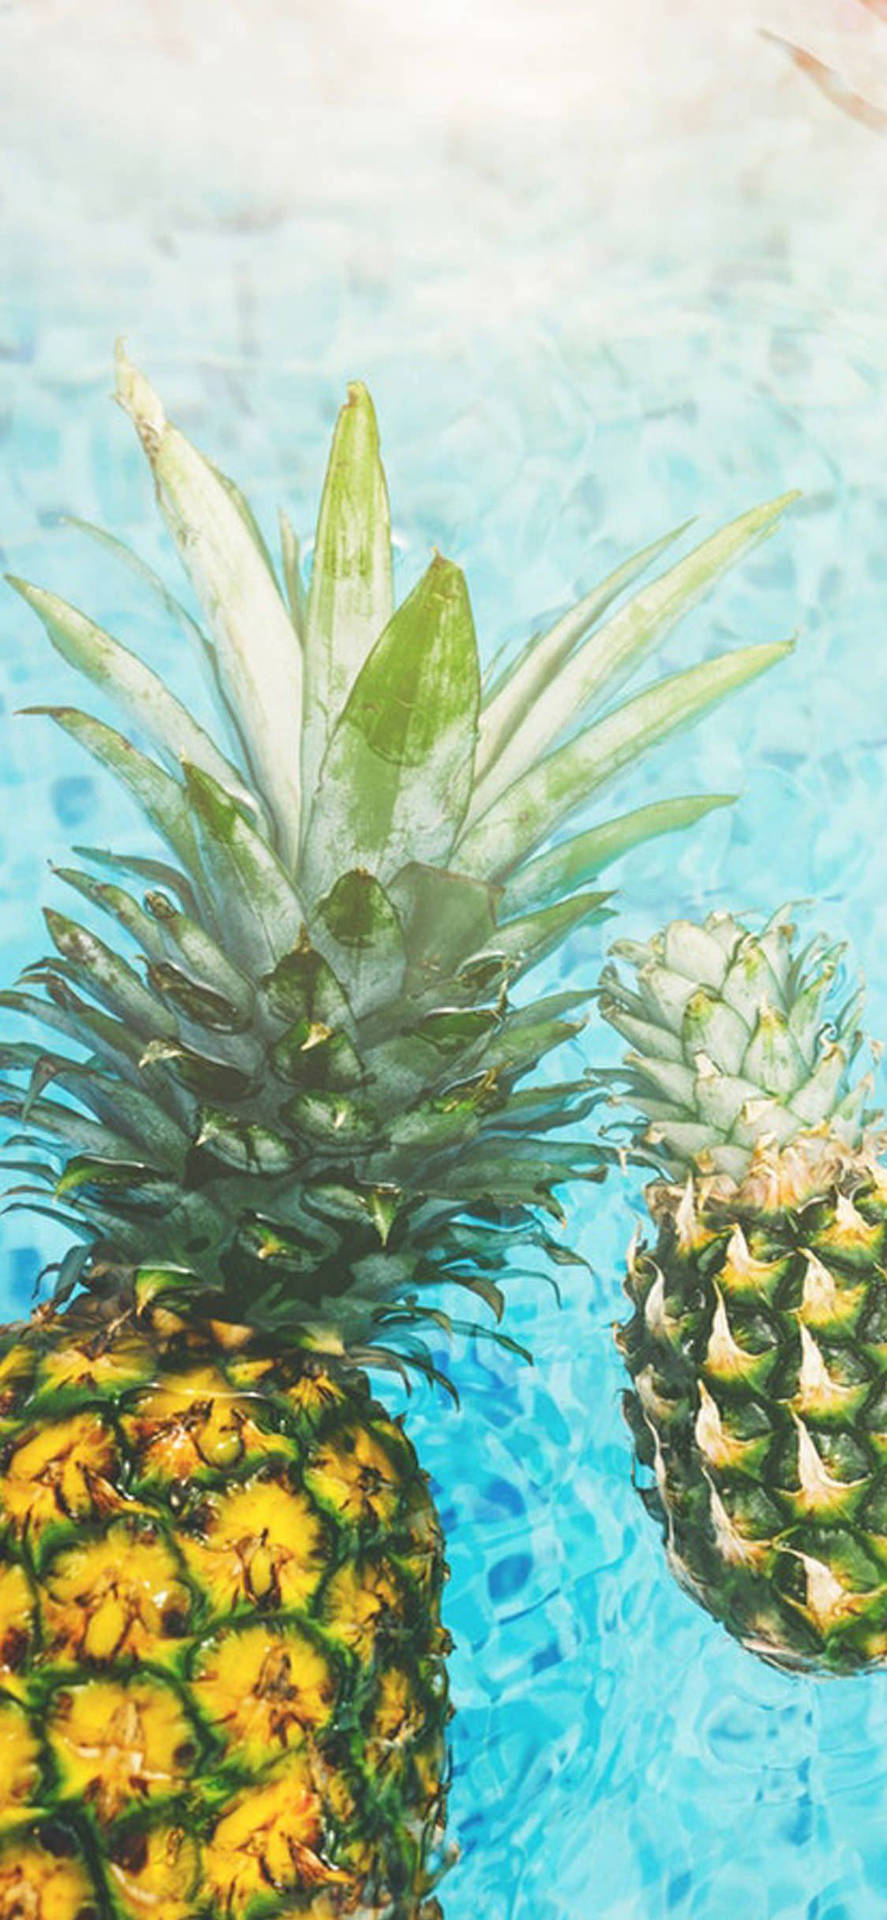 Tropical Pineapple iPhone wallpaper Wallpaper